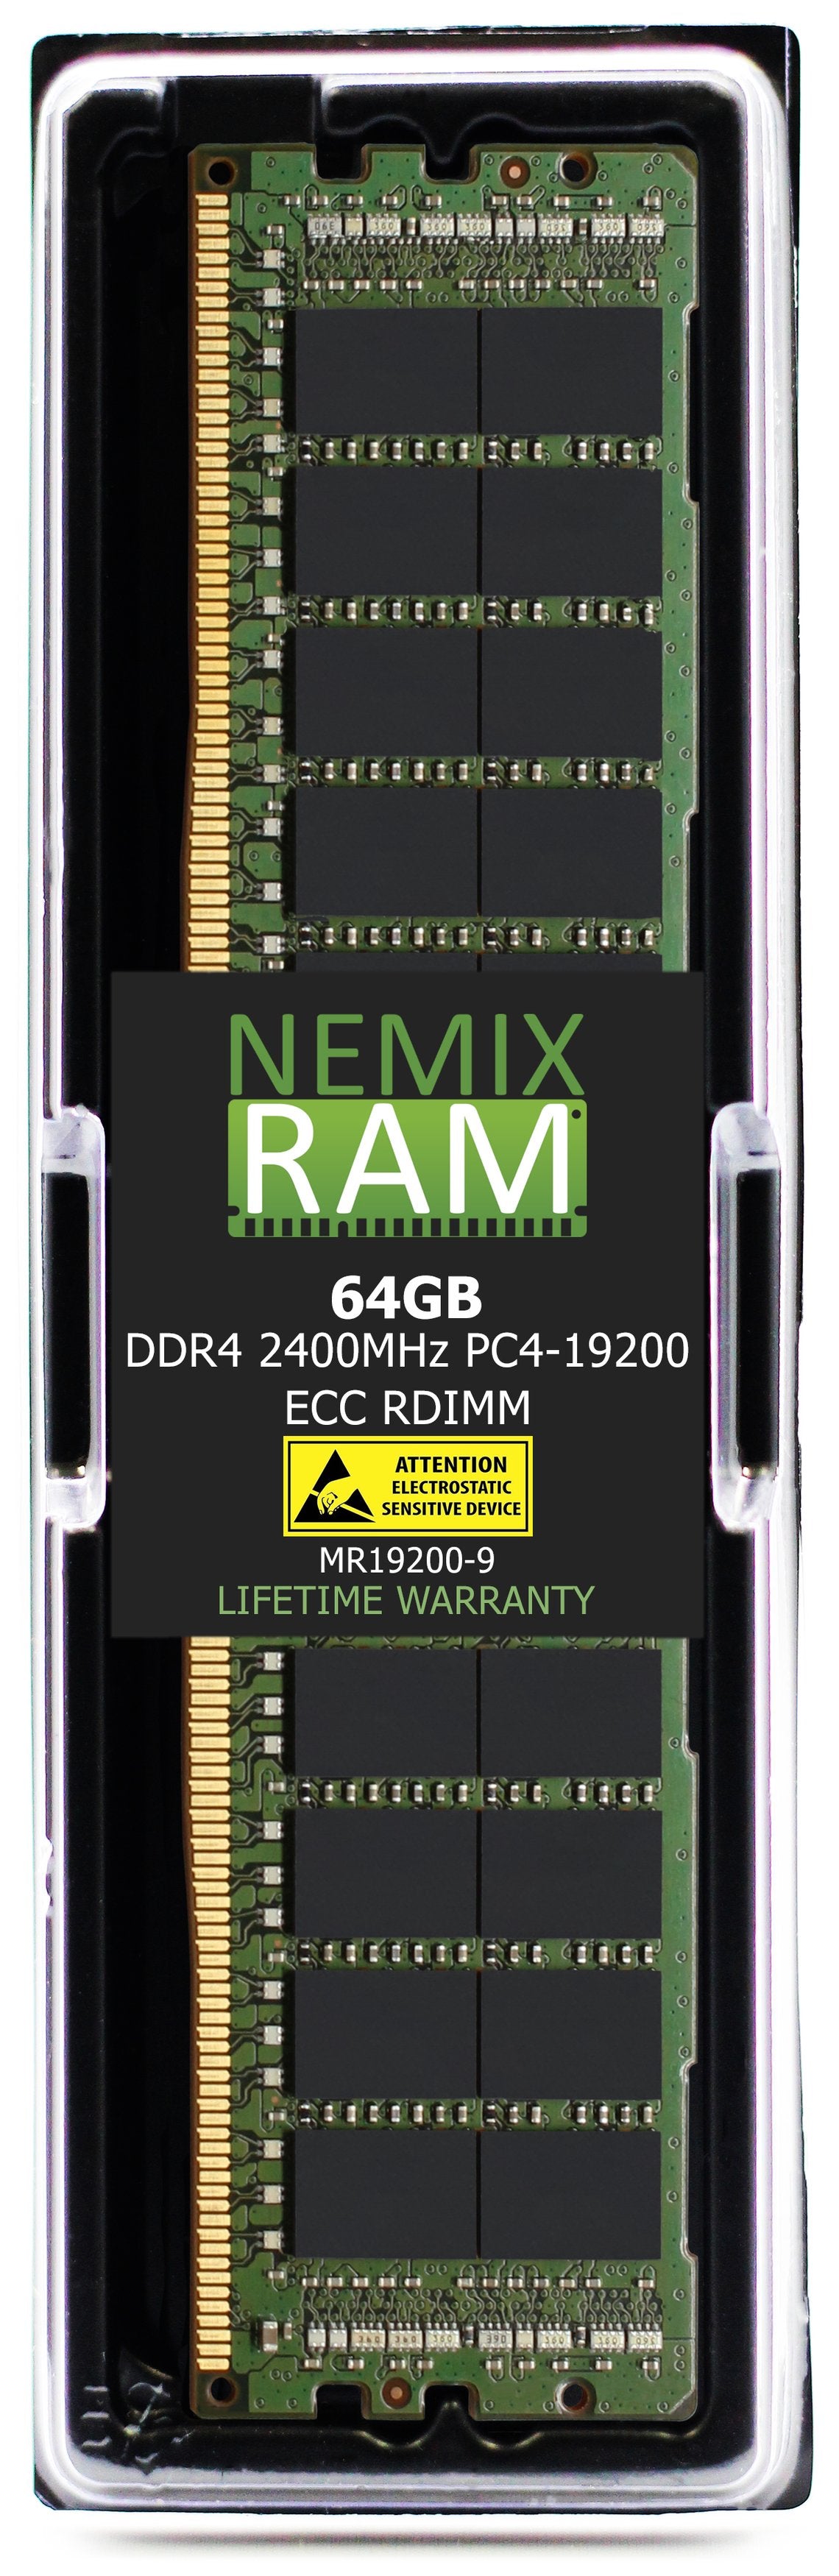 NEC Express5800 R120g Memory Module N8102-690F 64GB DDR4 2400MHZ PC4-19200 RDIMM